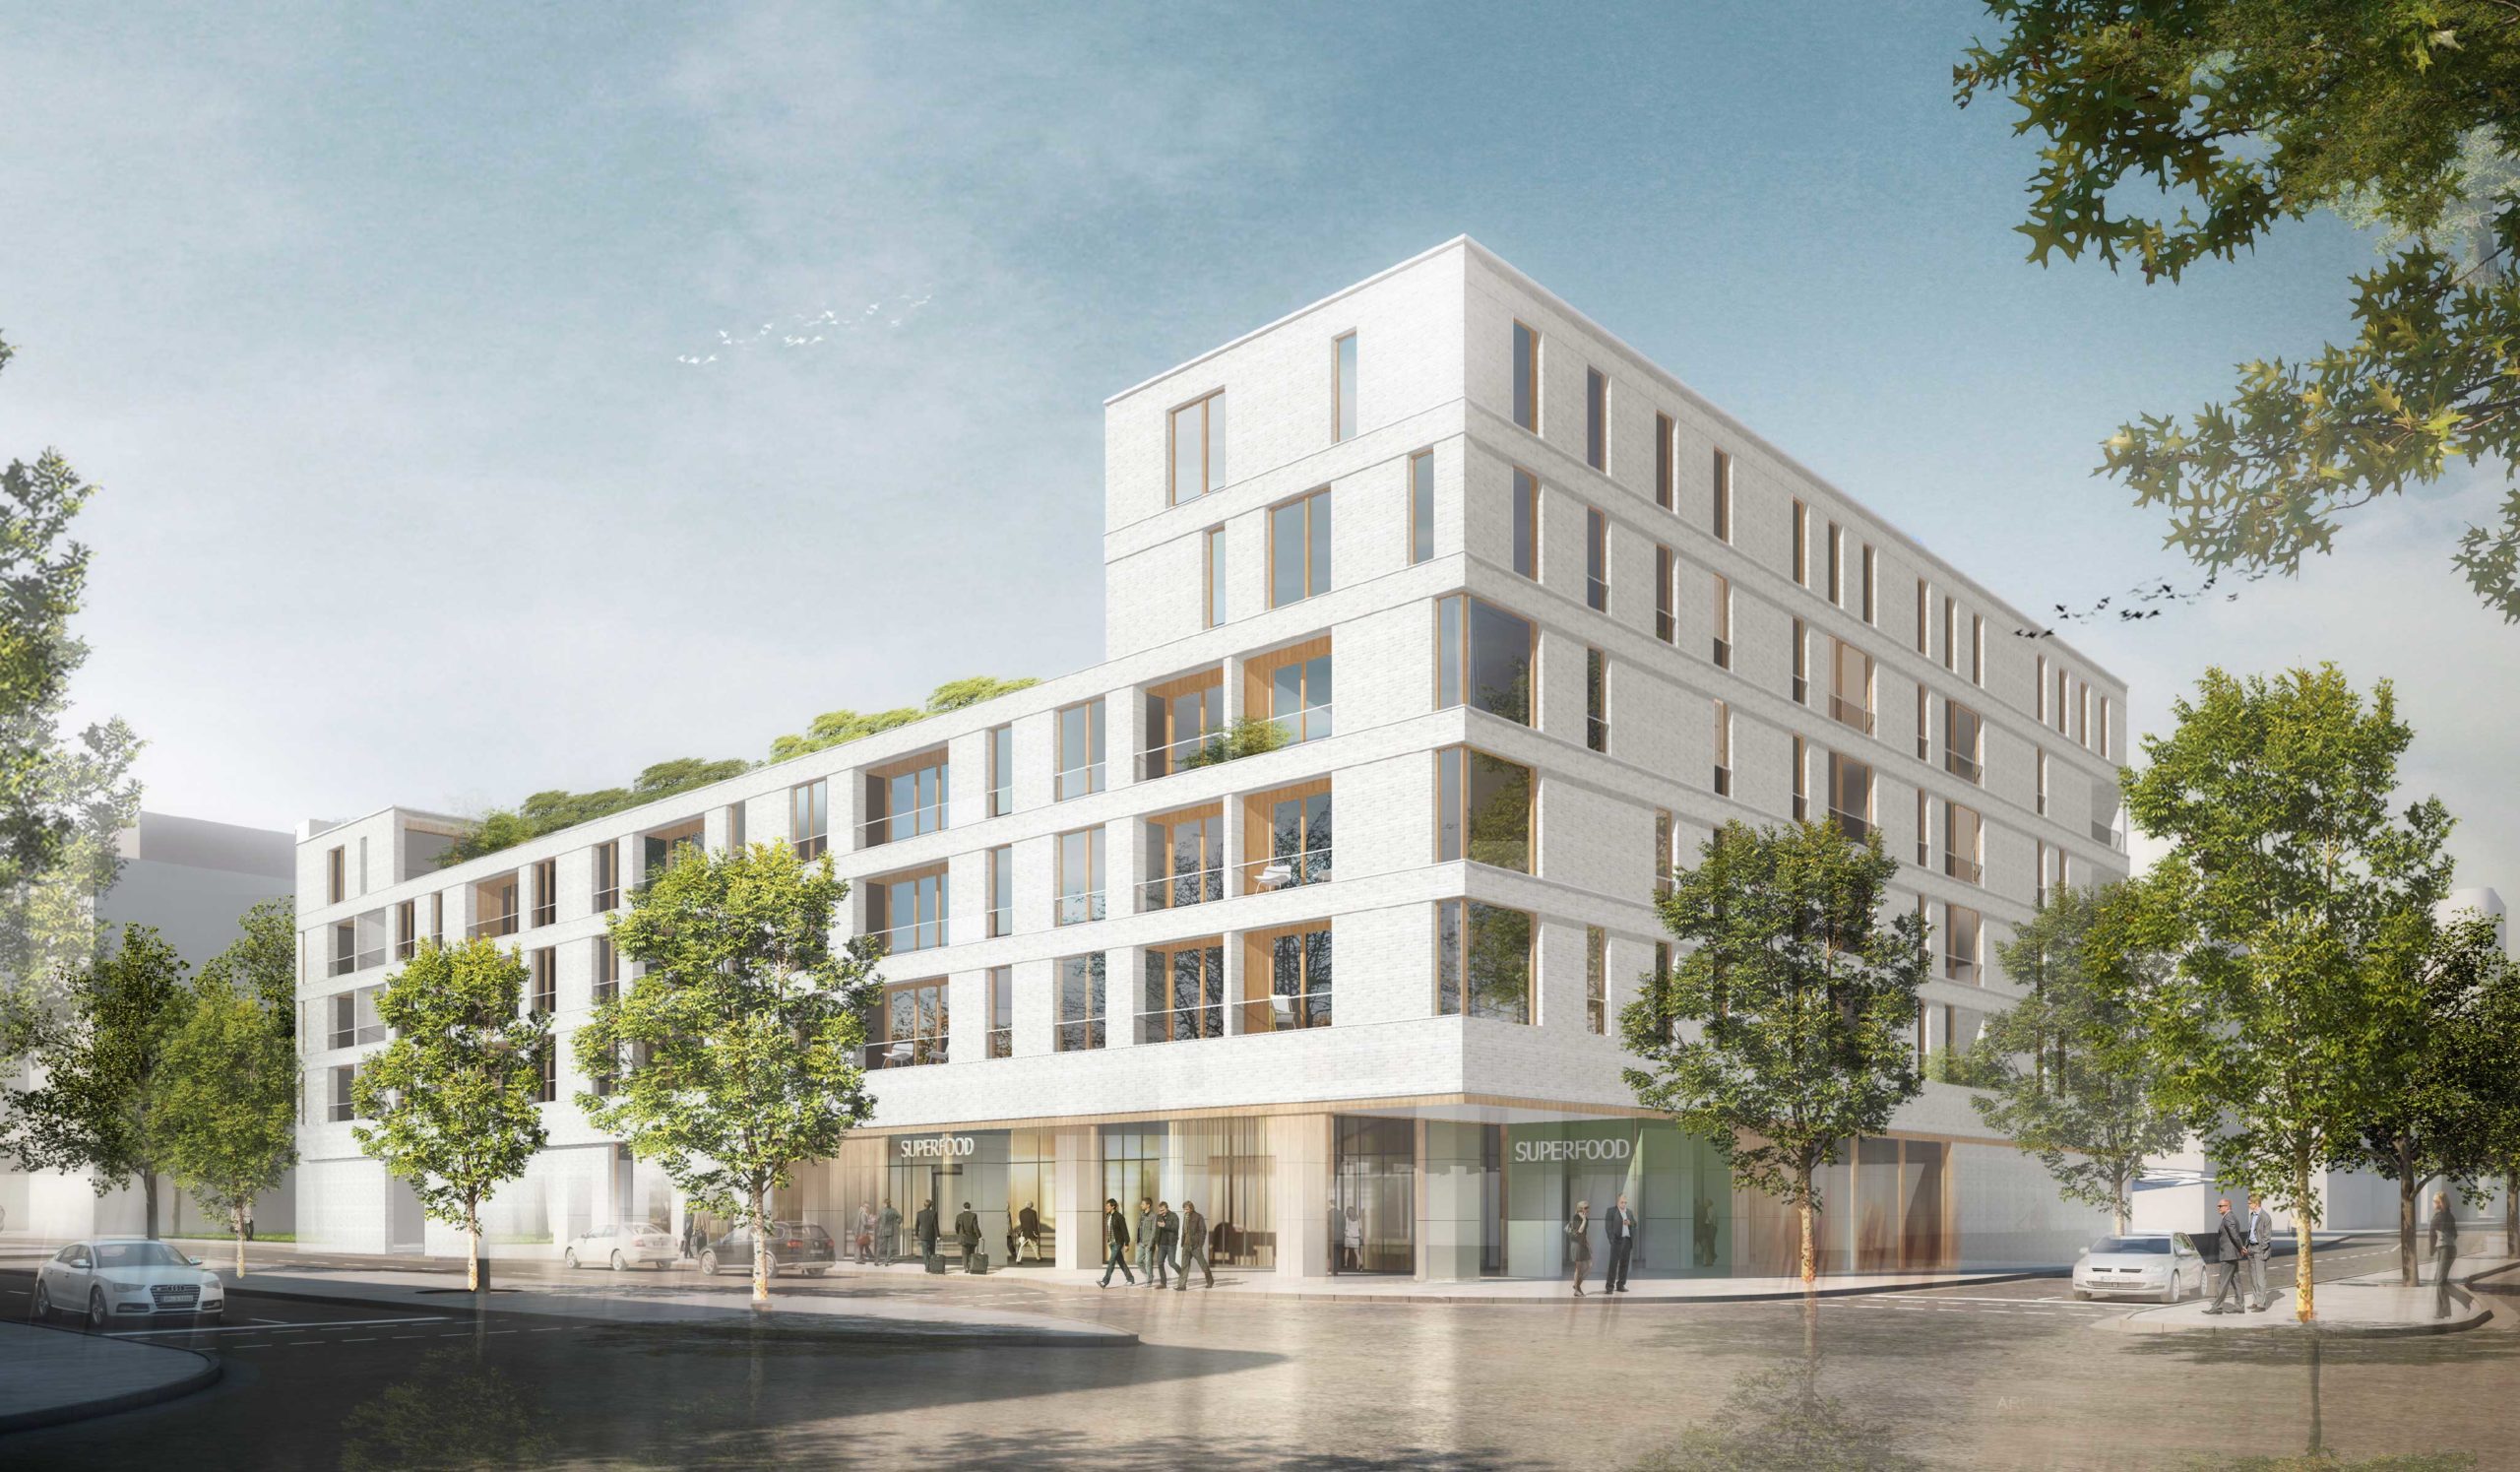 Perspektive Wettbewerb Wohnen über Einzelhandel in Karlsruhe von Bitsch+Bienstein Architekten in Wiesbaden